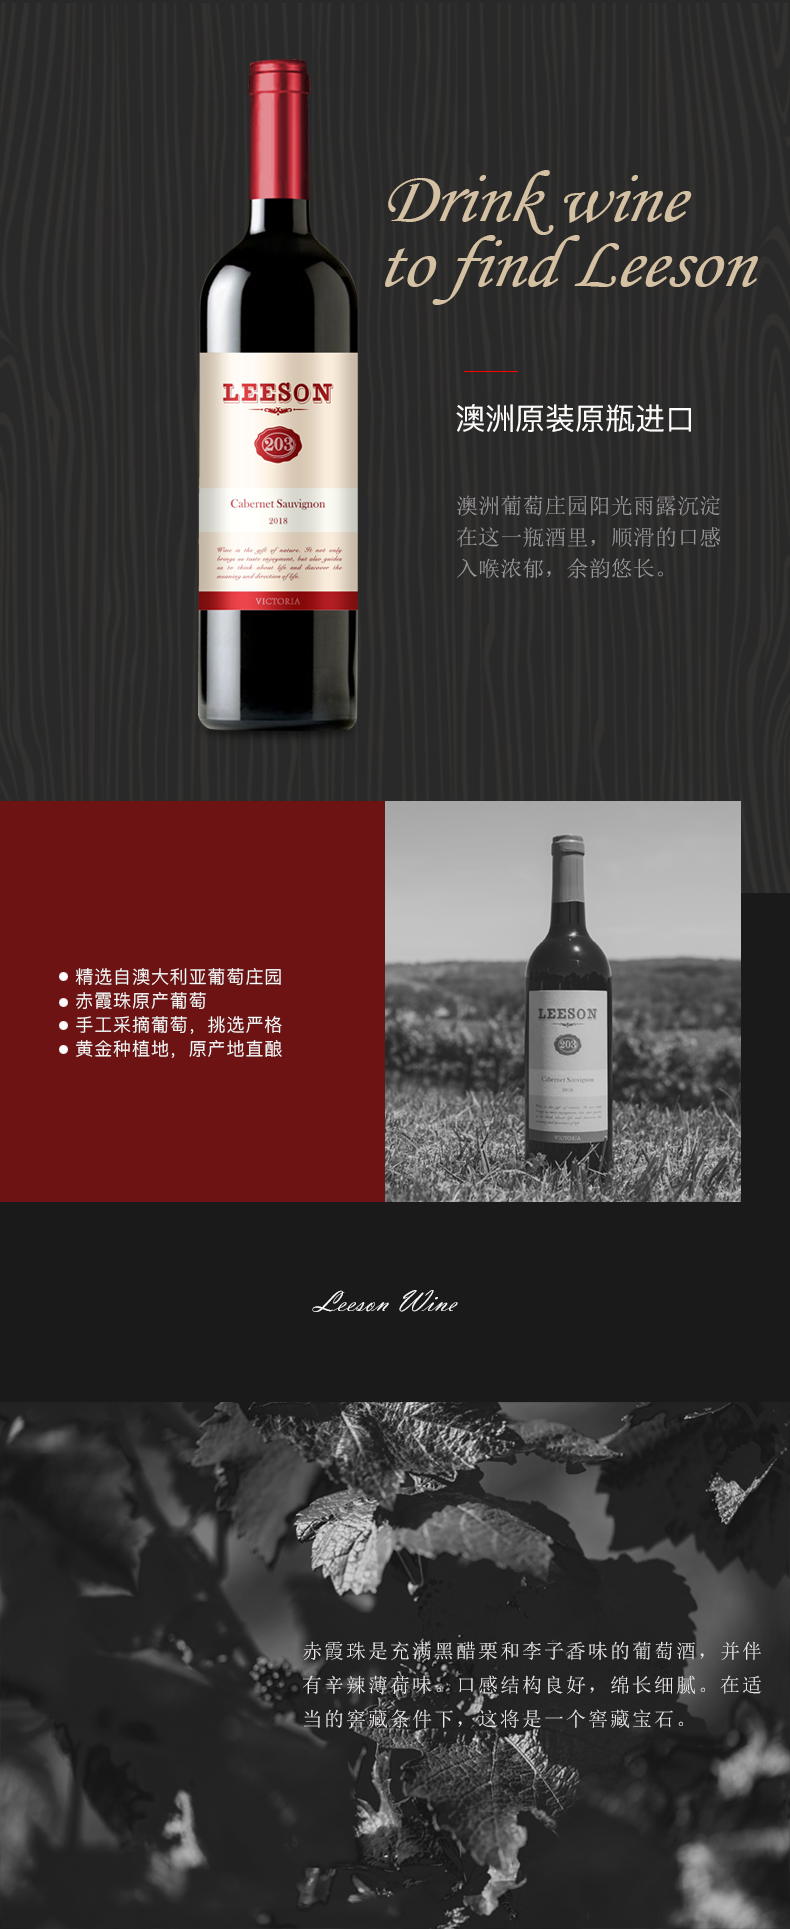 雷盛红酒203澳大利亚干红葡萄酒(图2)